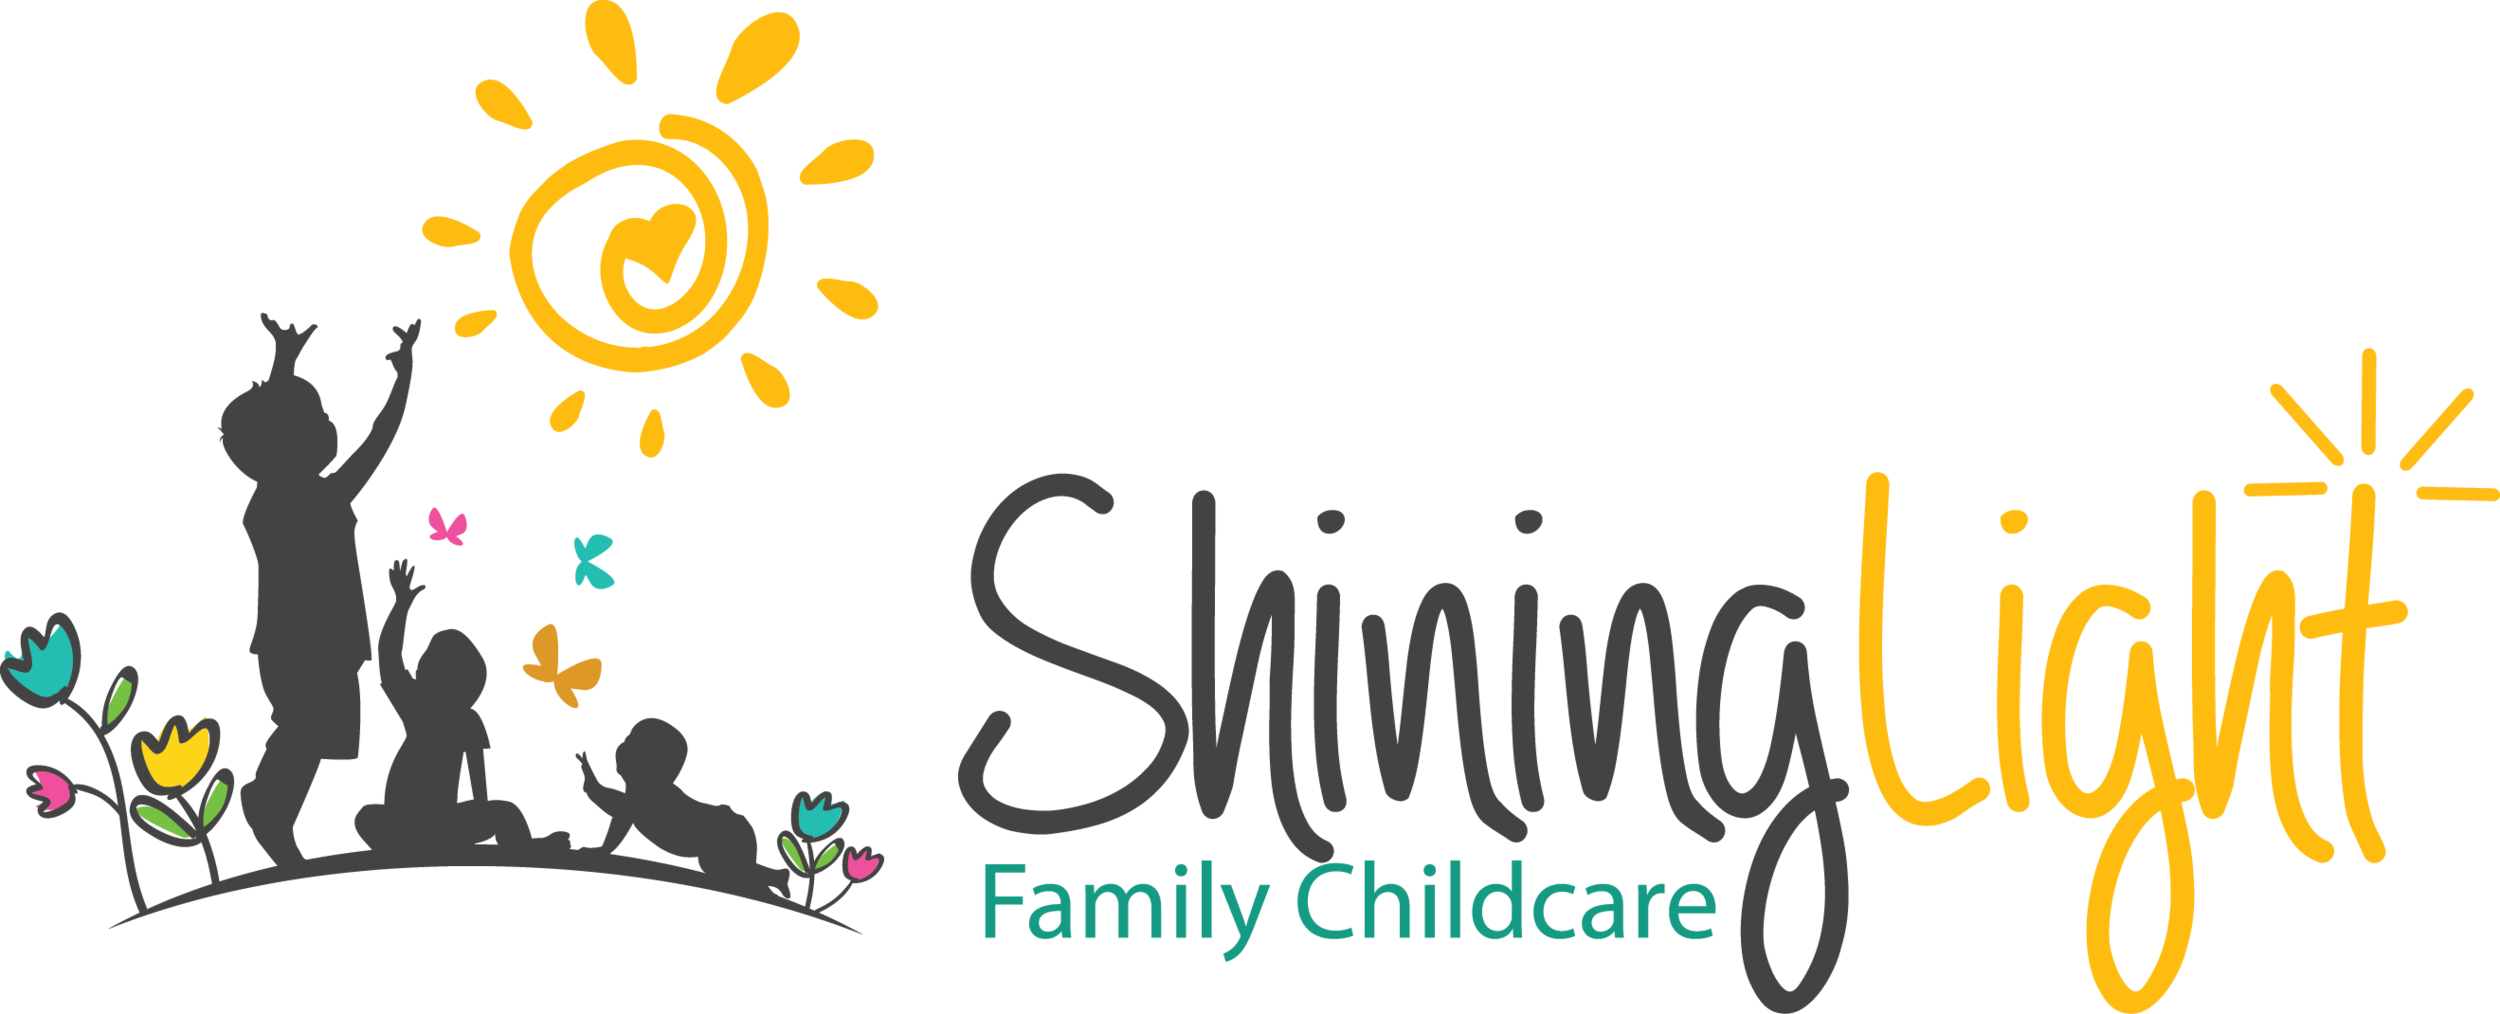 Shining Light Family Childcare